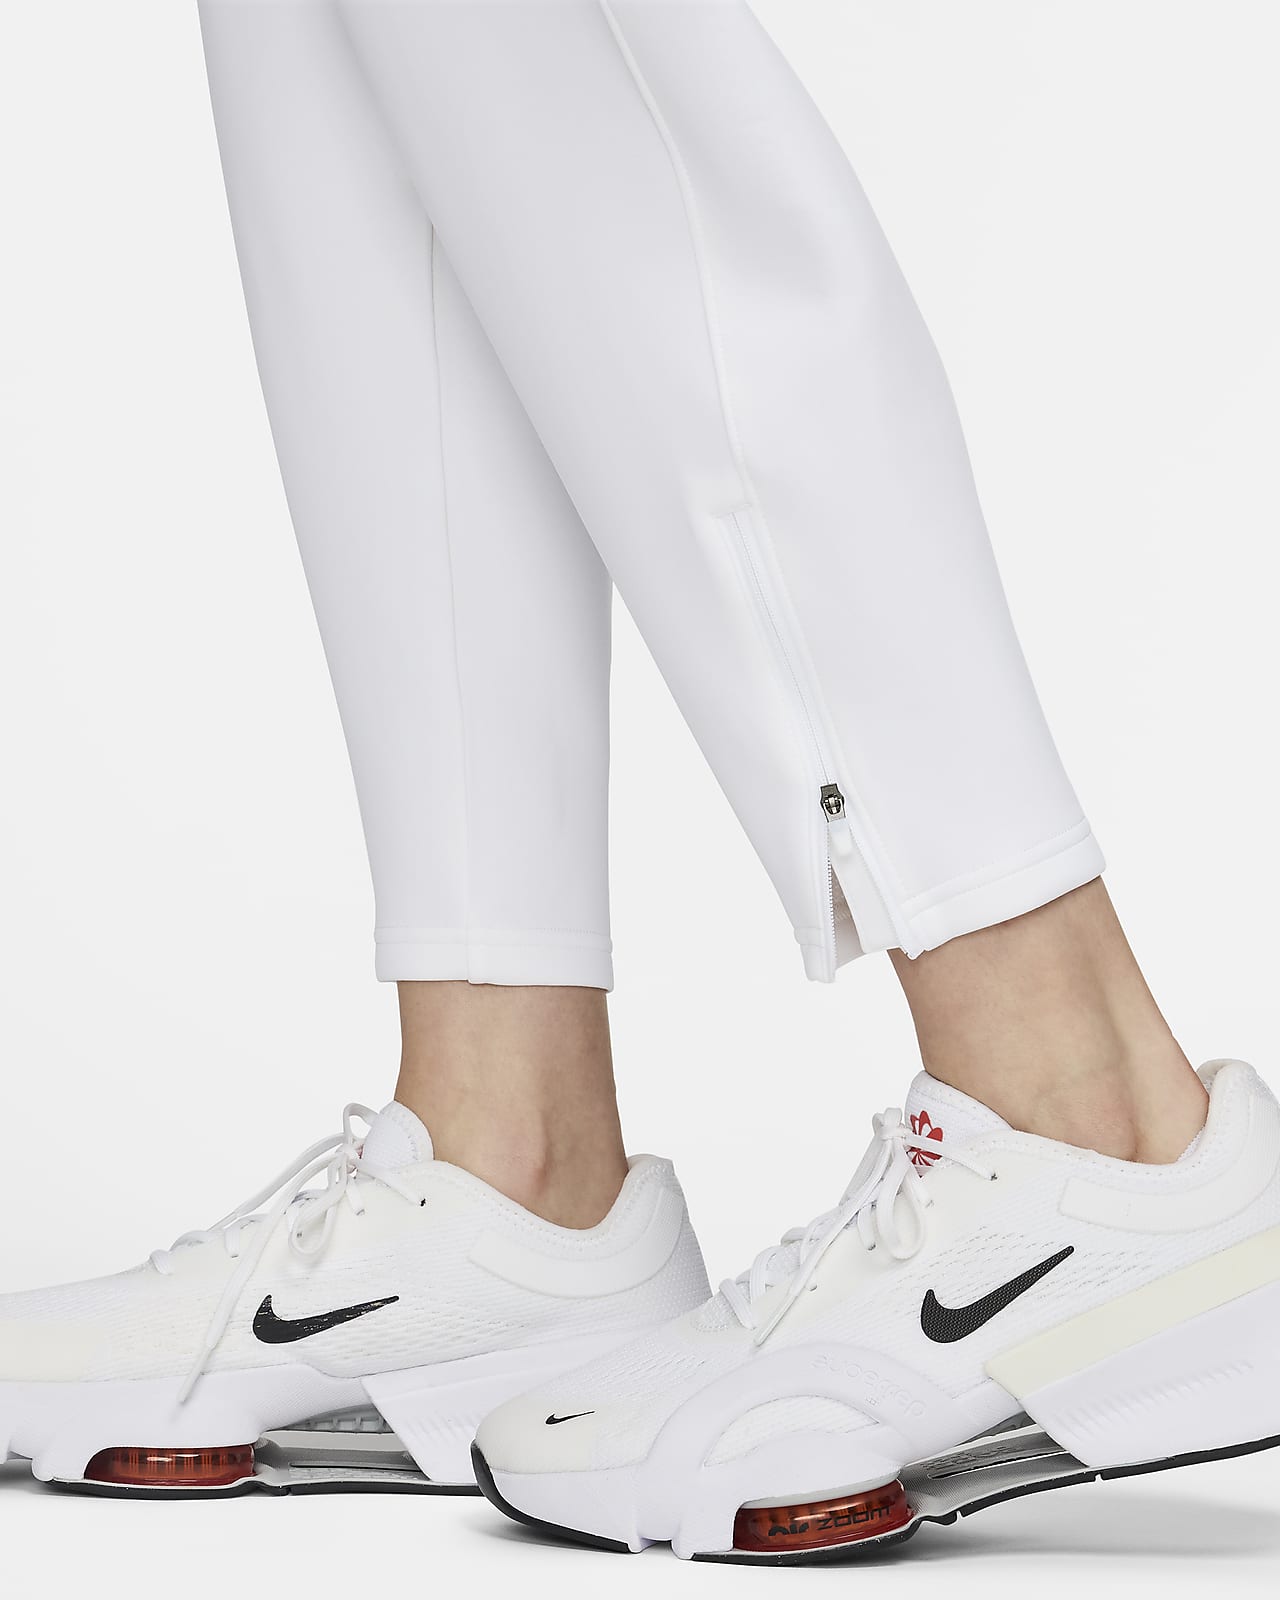 NWT New Nike DJ1060-010 Women Sportswear 7/8 Fleece Training Pants Black  Size M